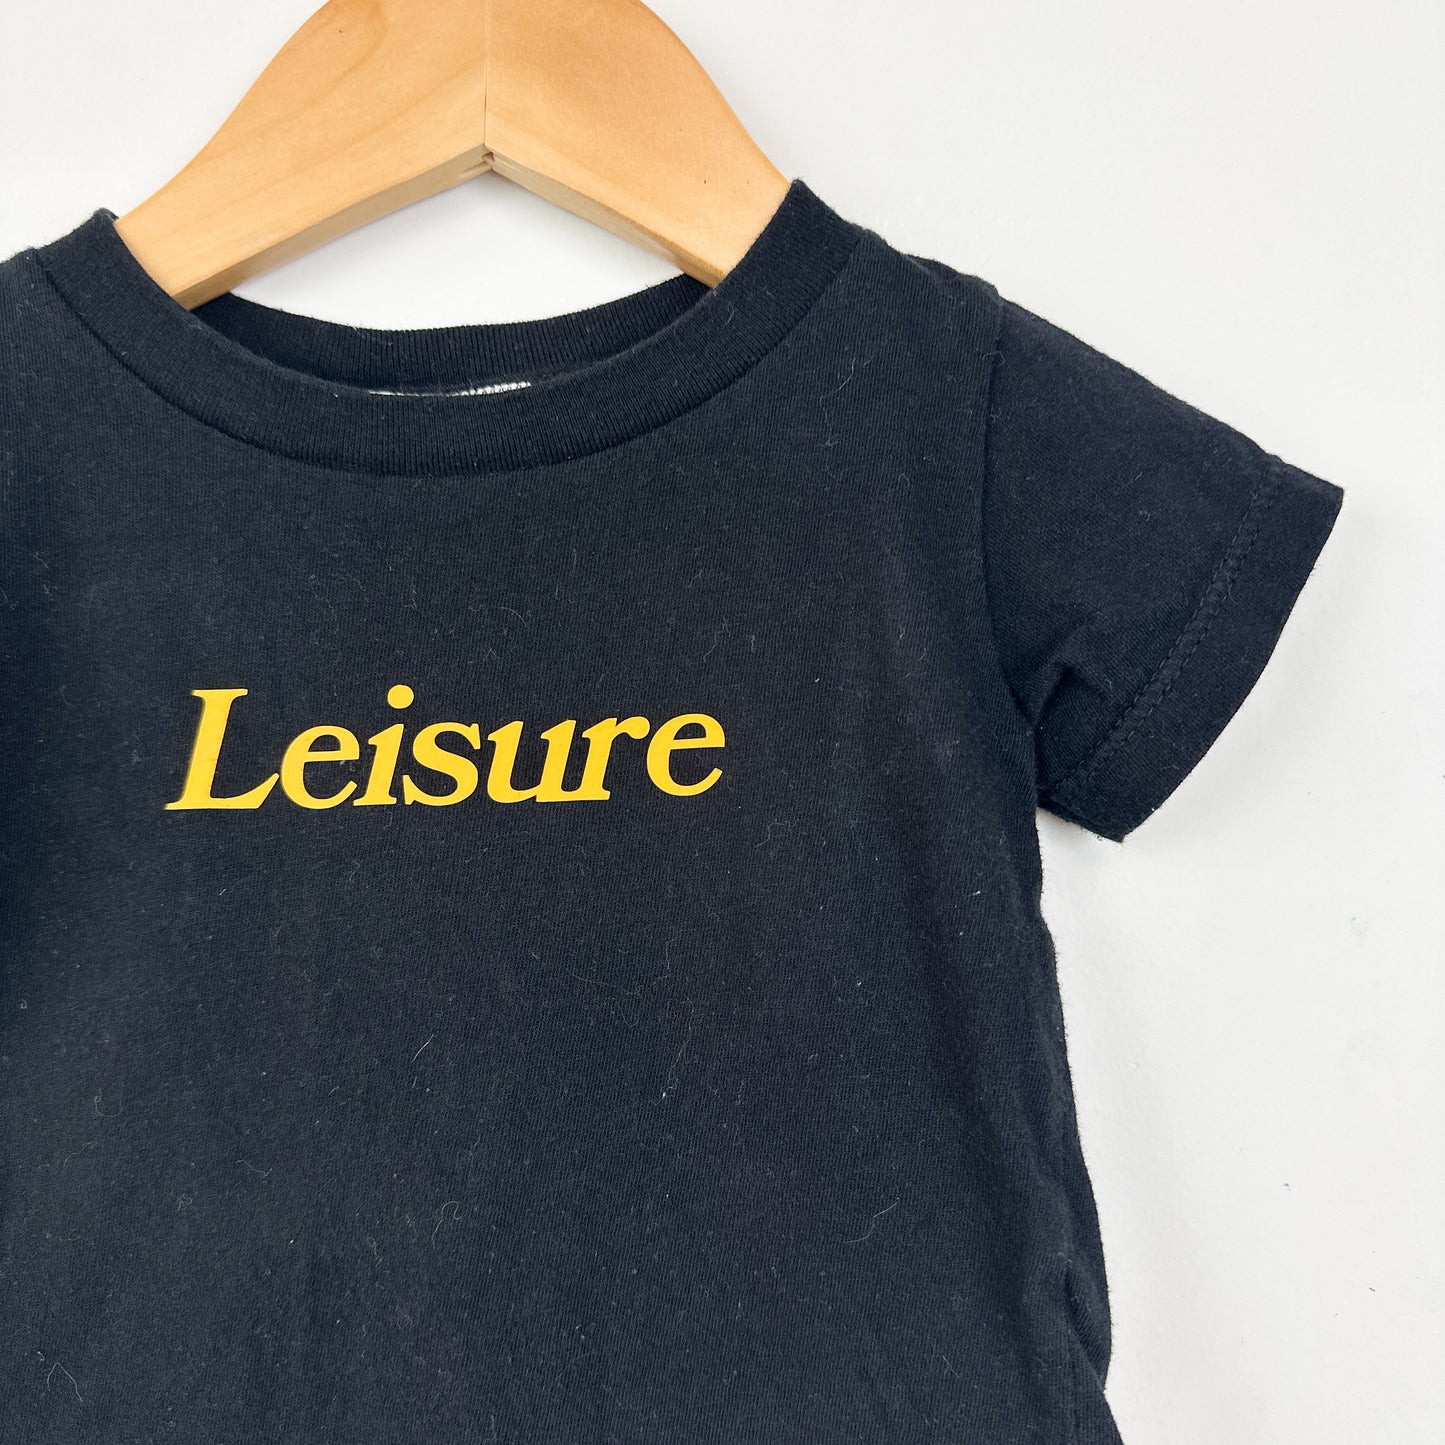 LEISURE - Black Logo Tee - Size 12mo